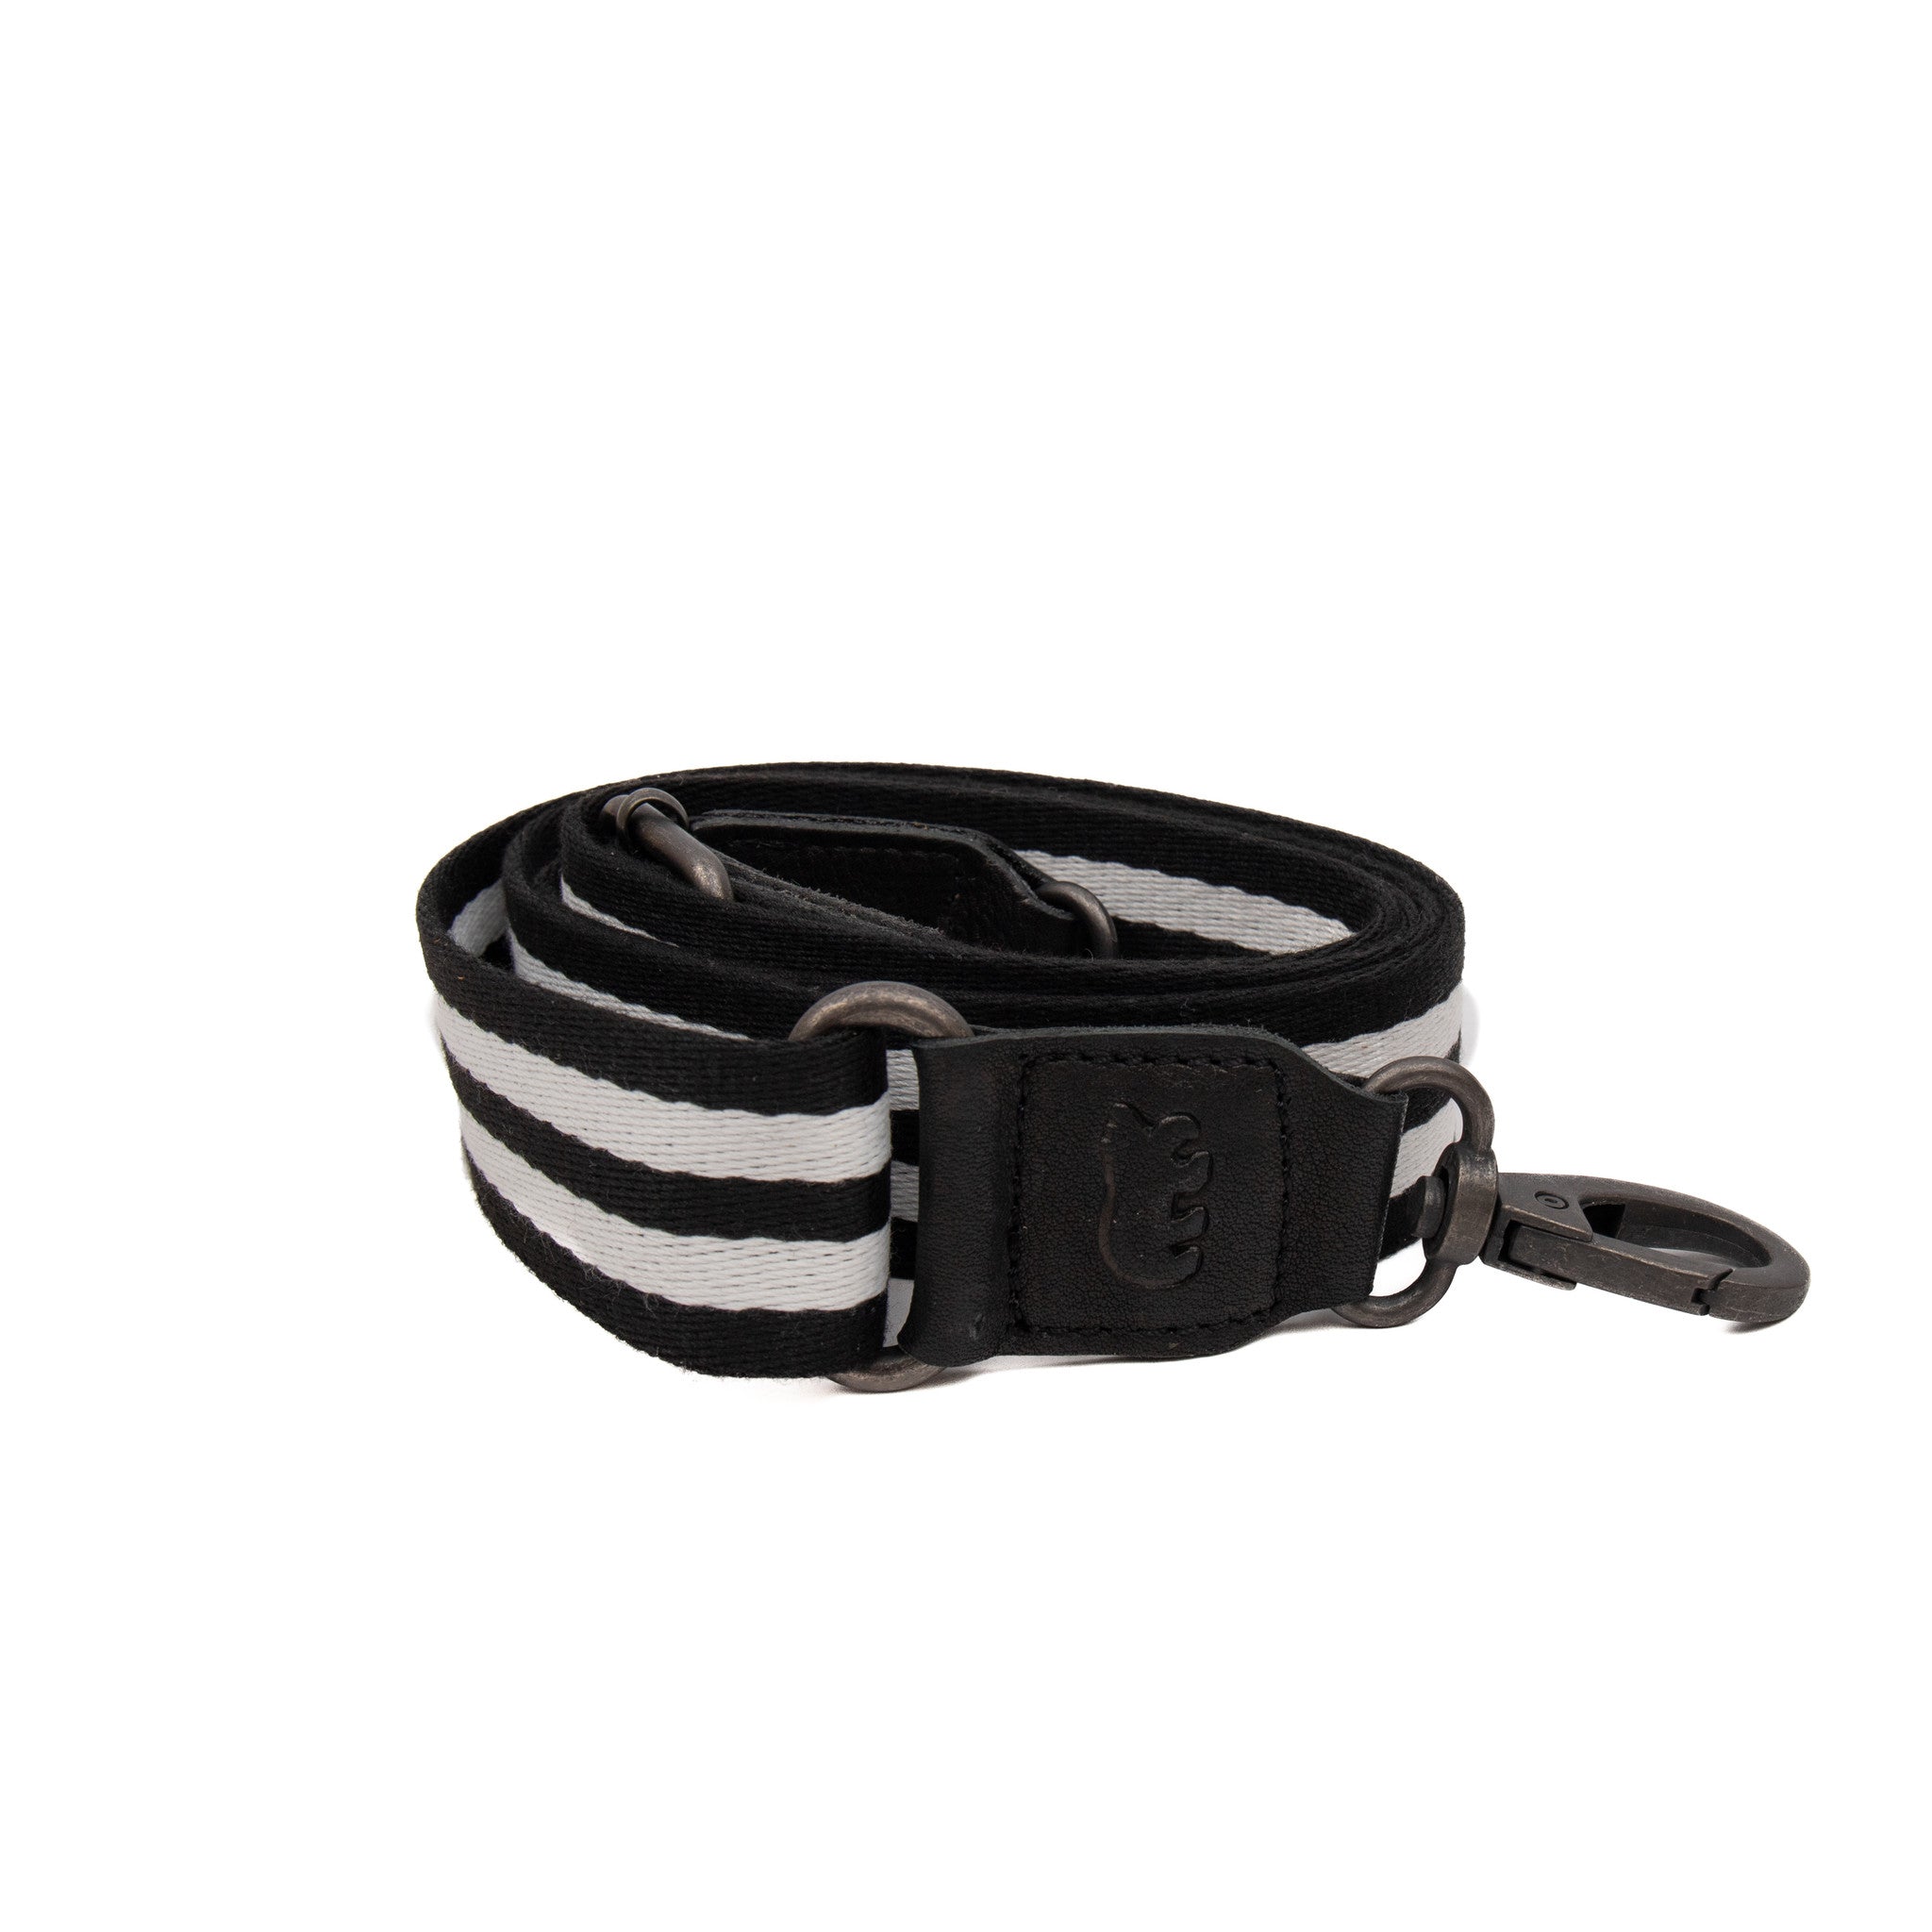 Bag strap 'Puck' black/white